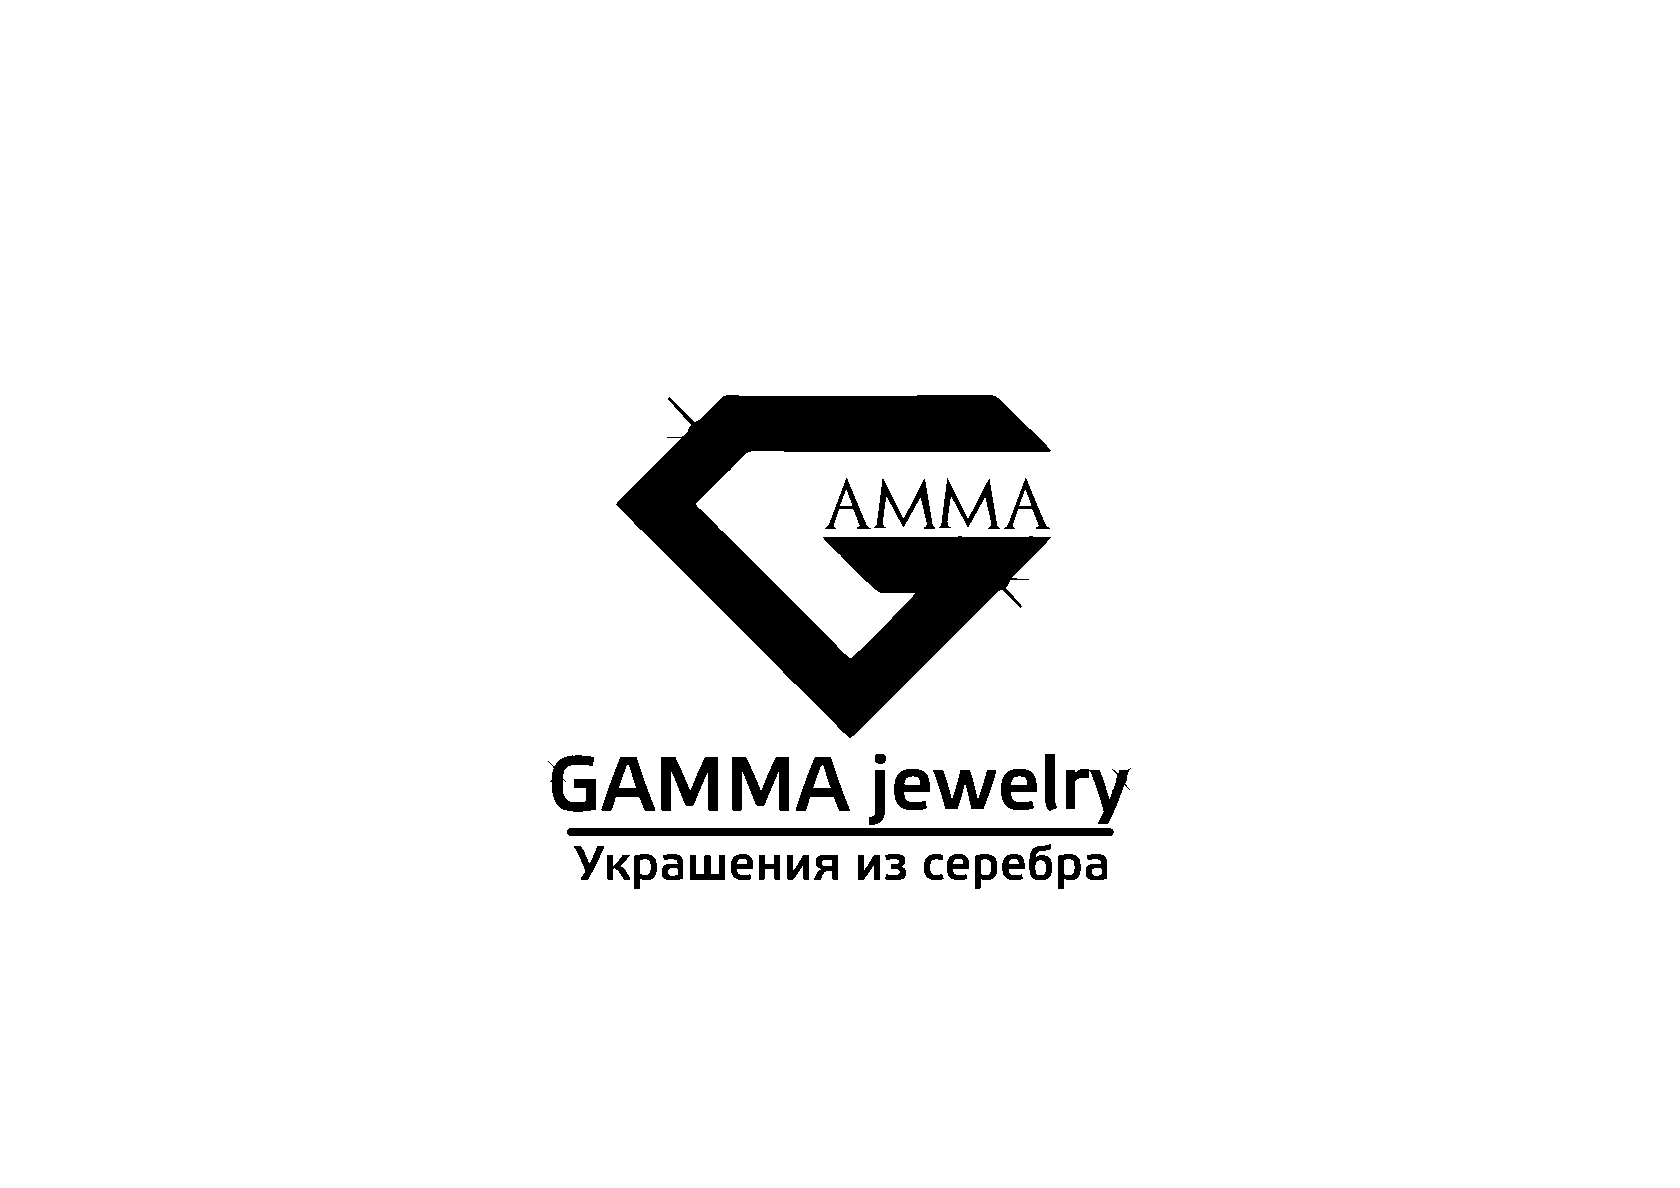 GAMMA jewelry